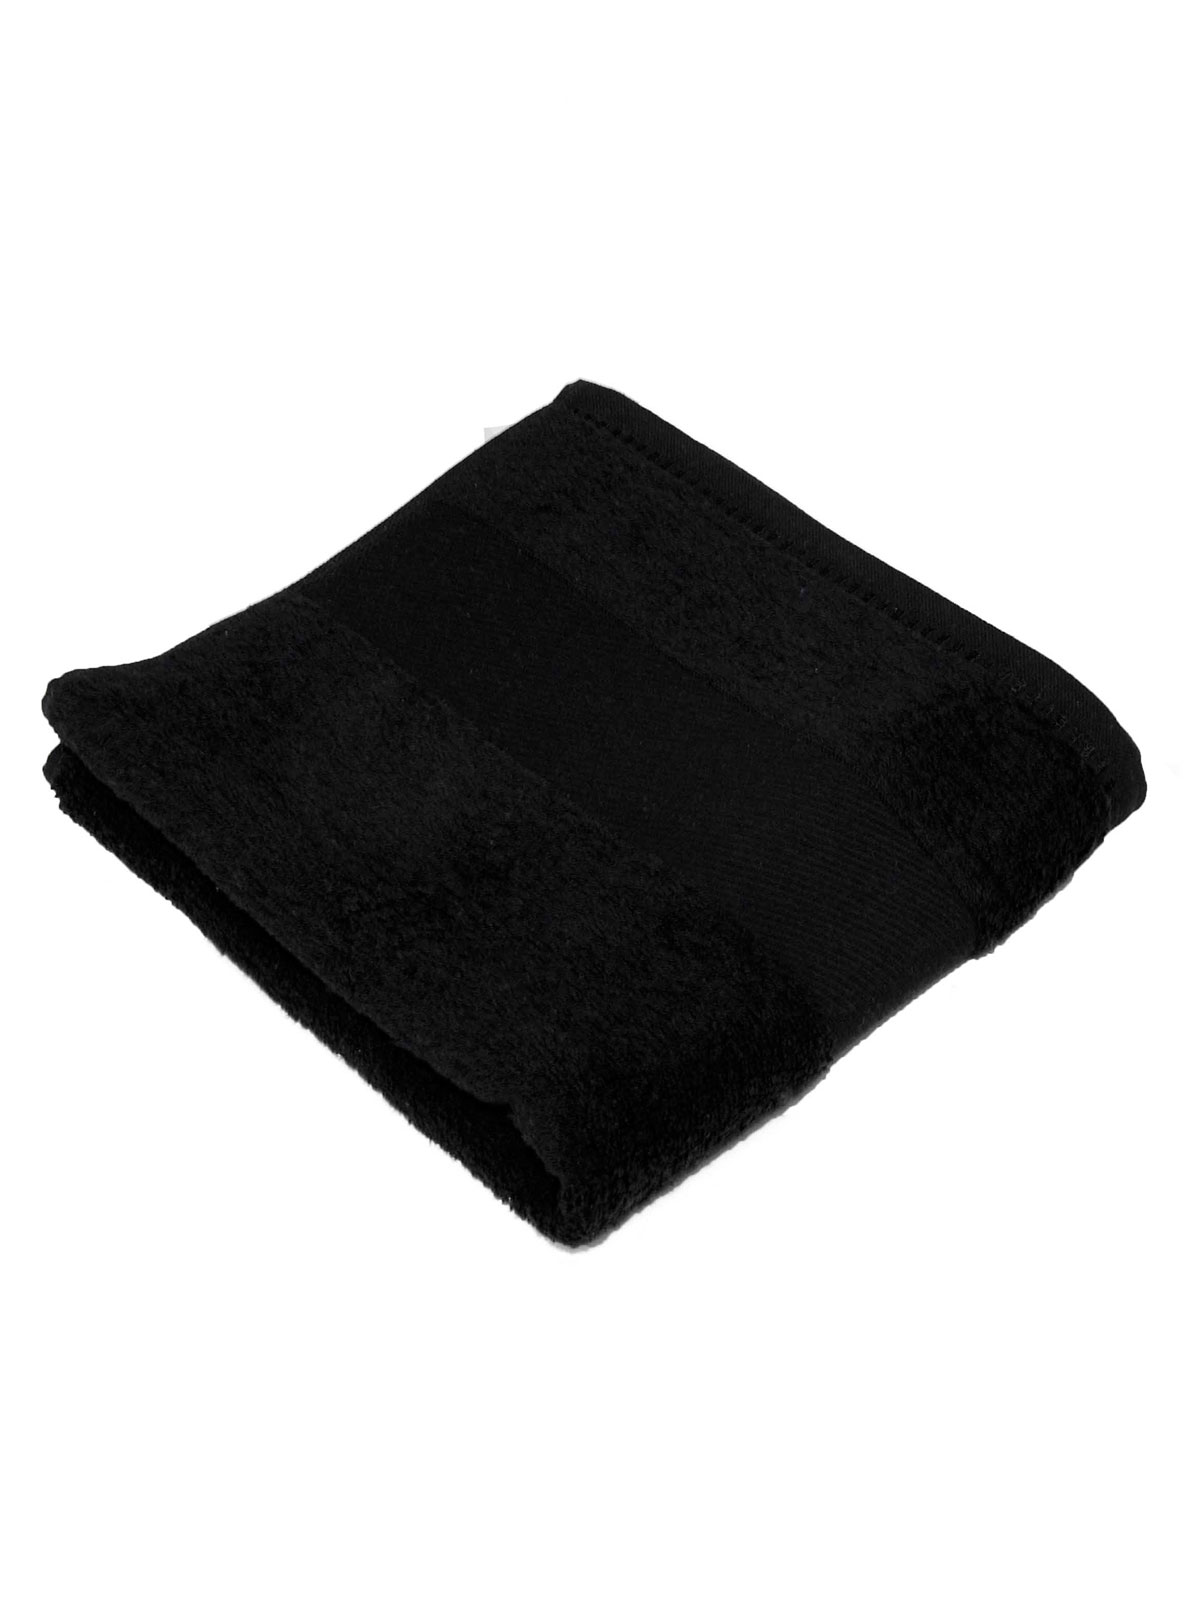 classic-towel-100x160-black.webp